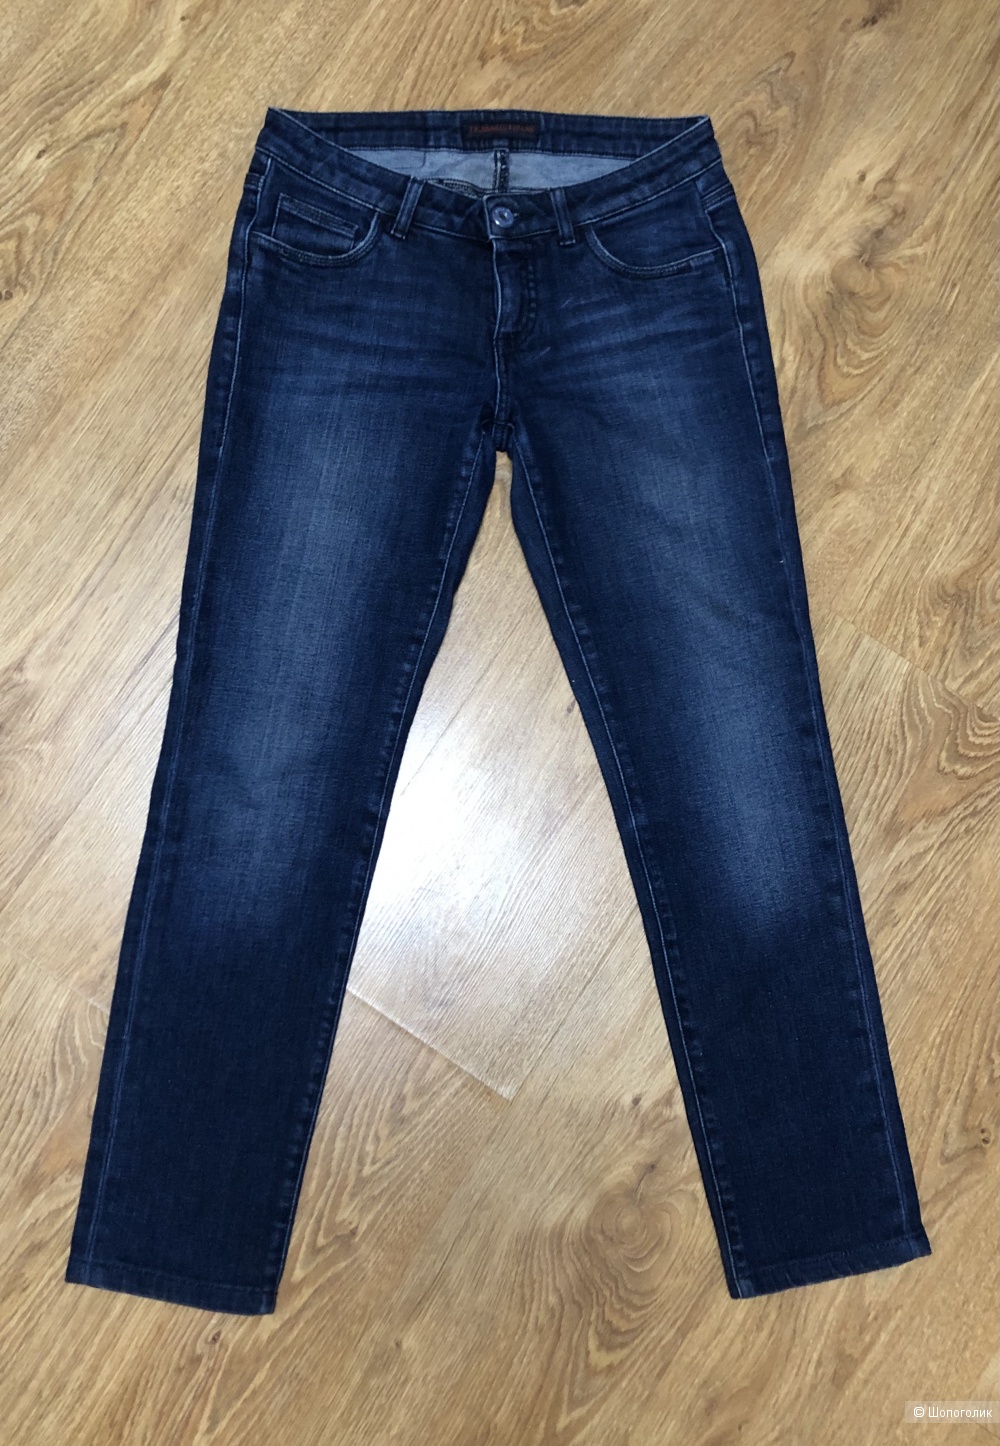 Сет джинсы trussardi jeans и футболка Armani jeans размер S